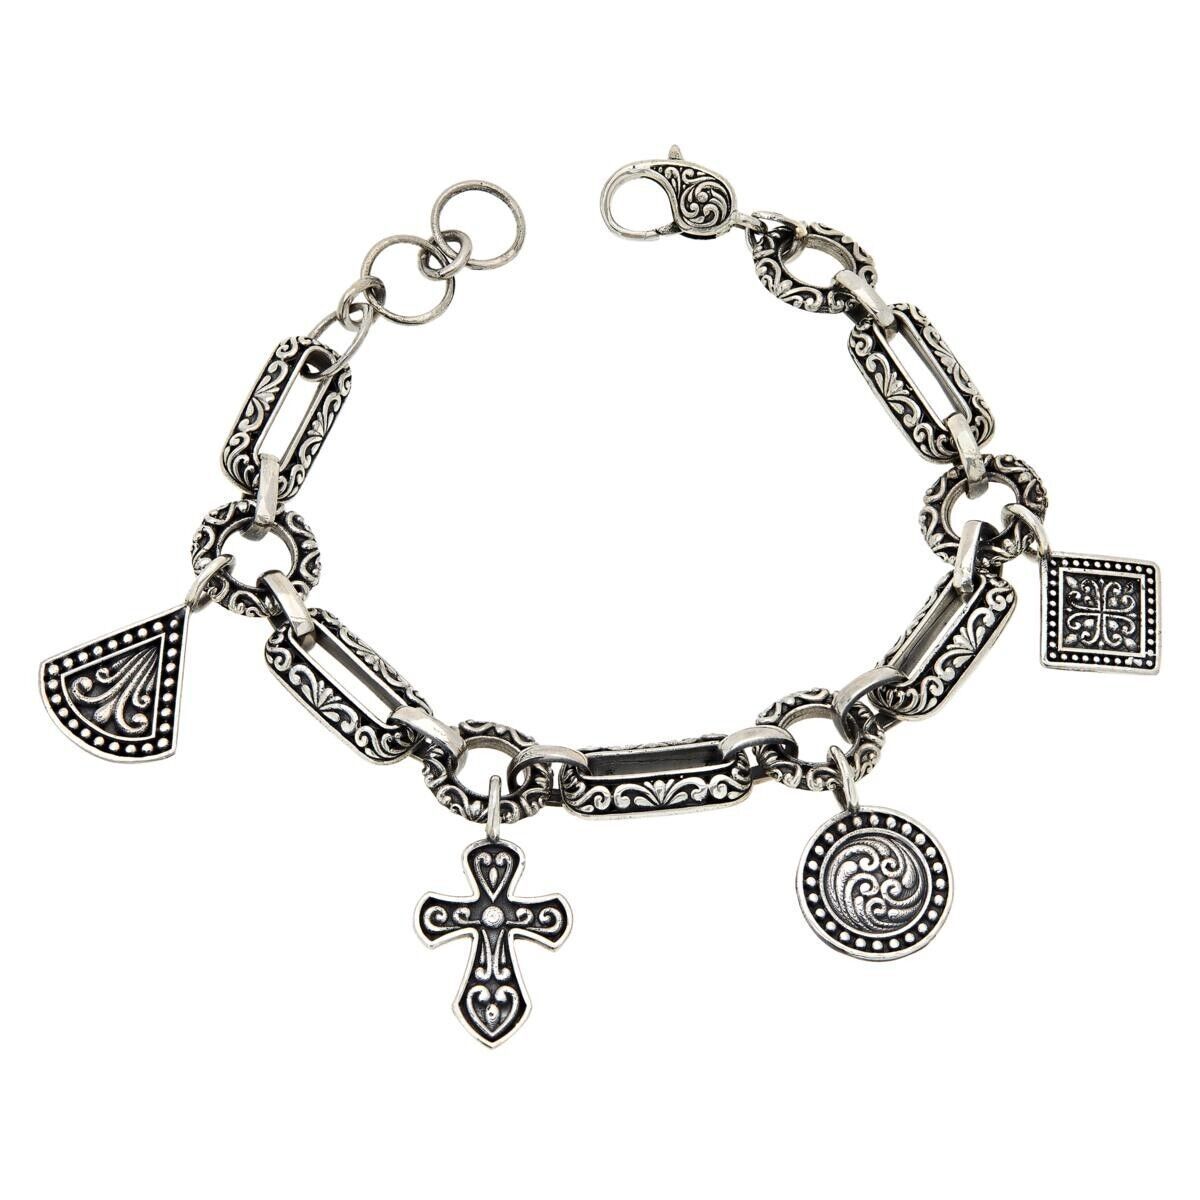 Bali RoManse Sterling Silver Charm Bracelet. 7-1/4" (374704732198)